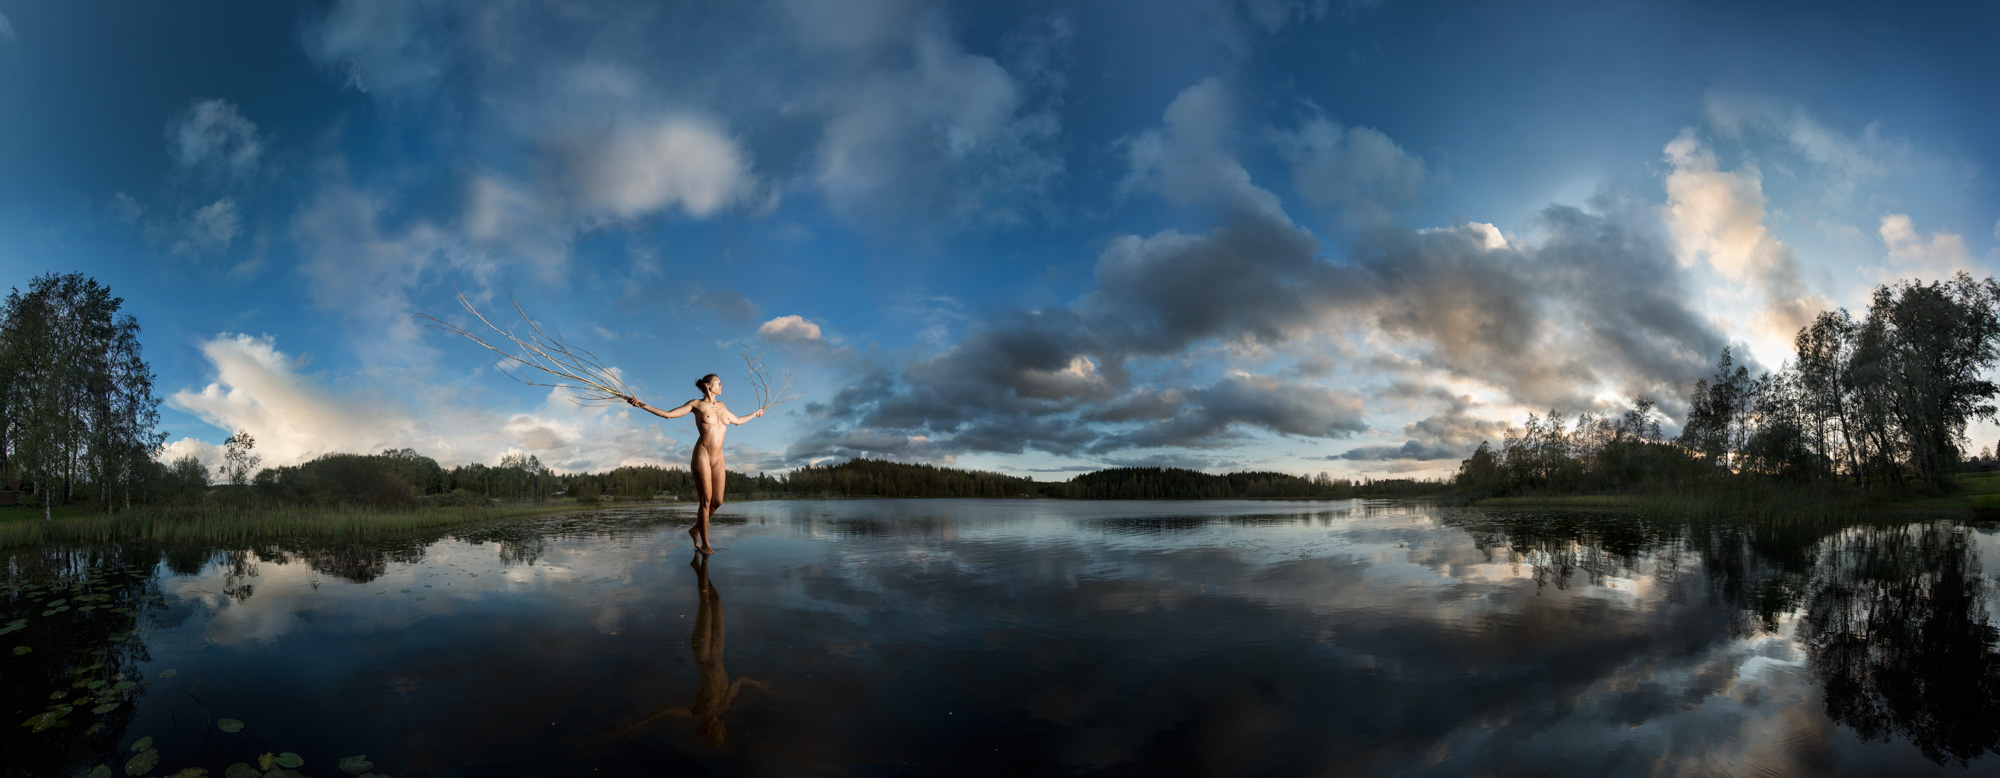 KÄÄNNA JUURI VII. Fotografía y retoque digital. Lago Iso Hustu, Hämeenkyrö, Finlandia